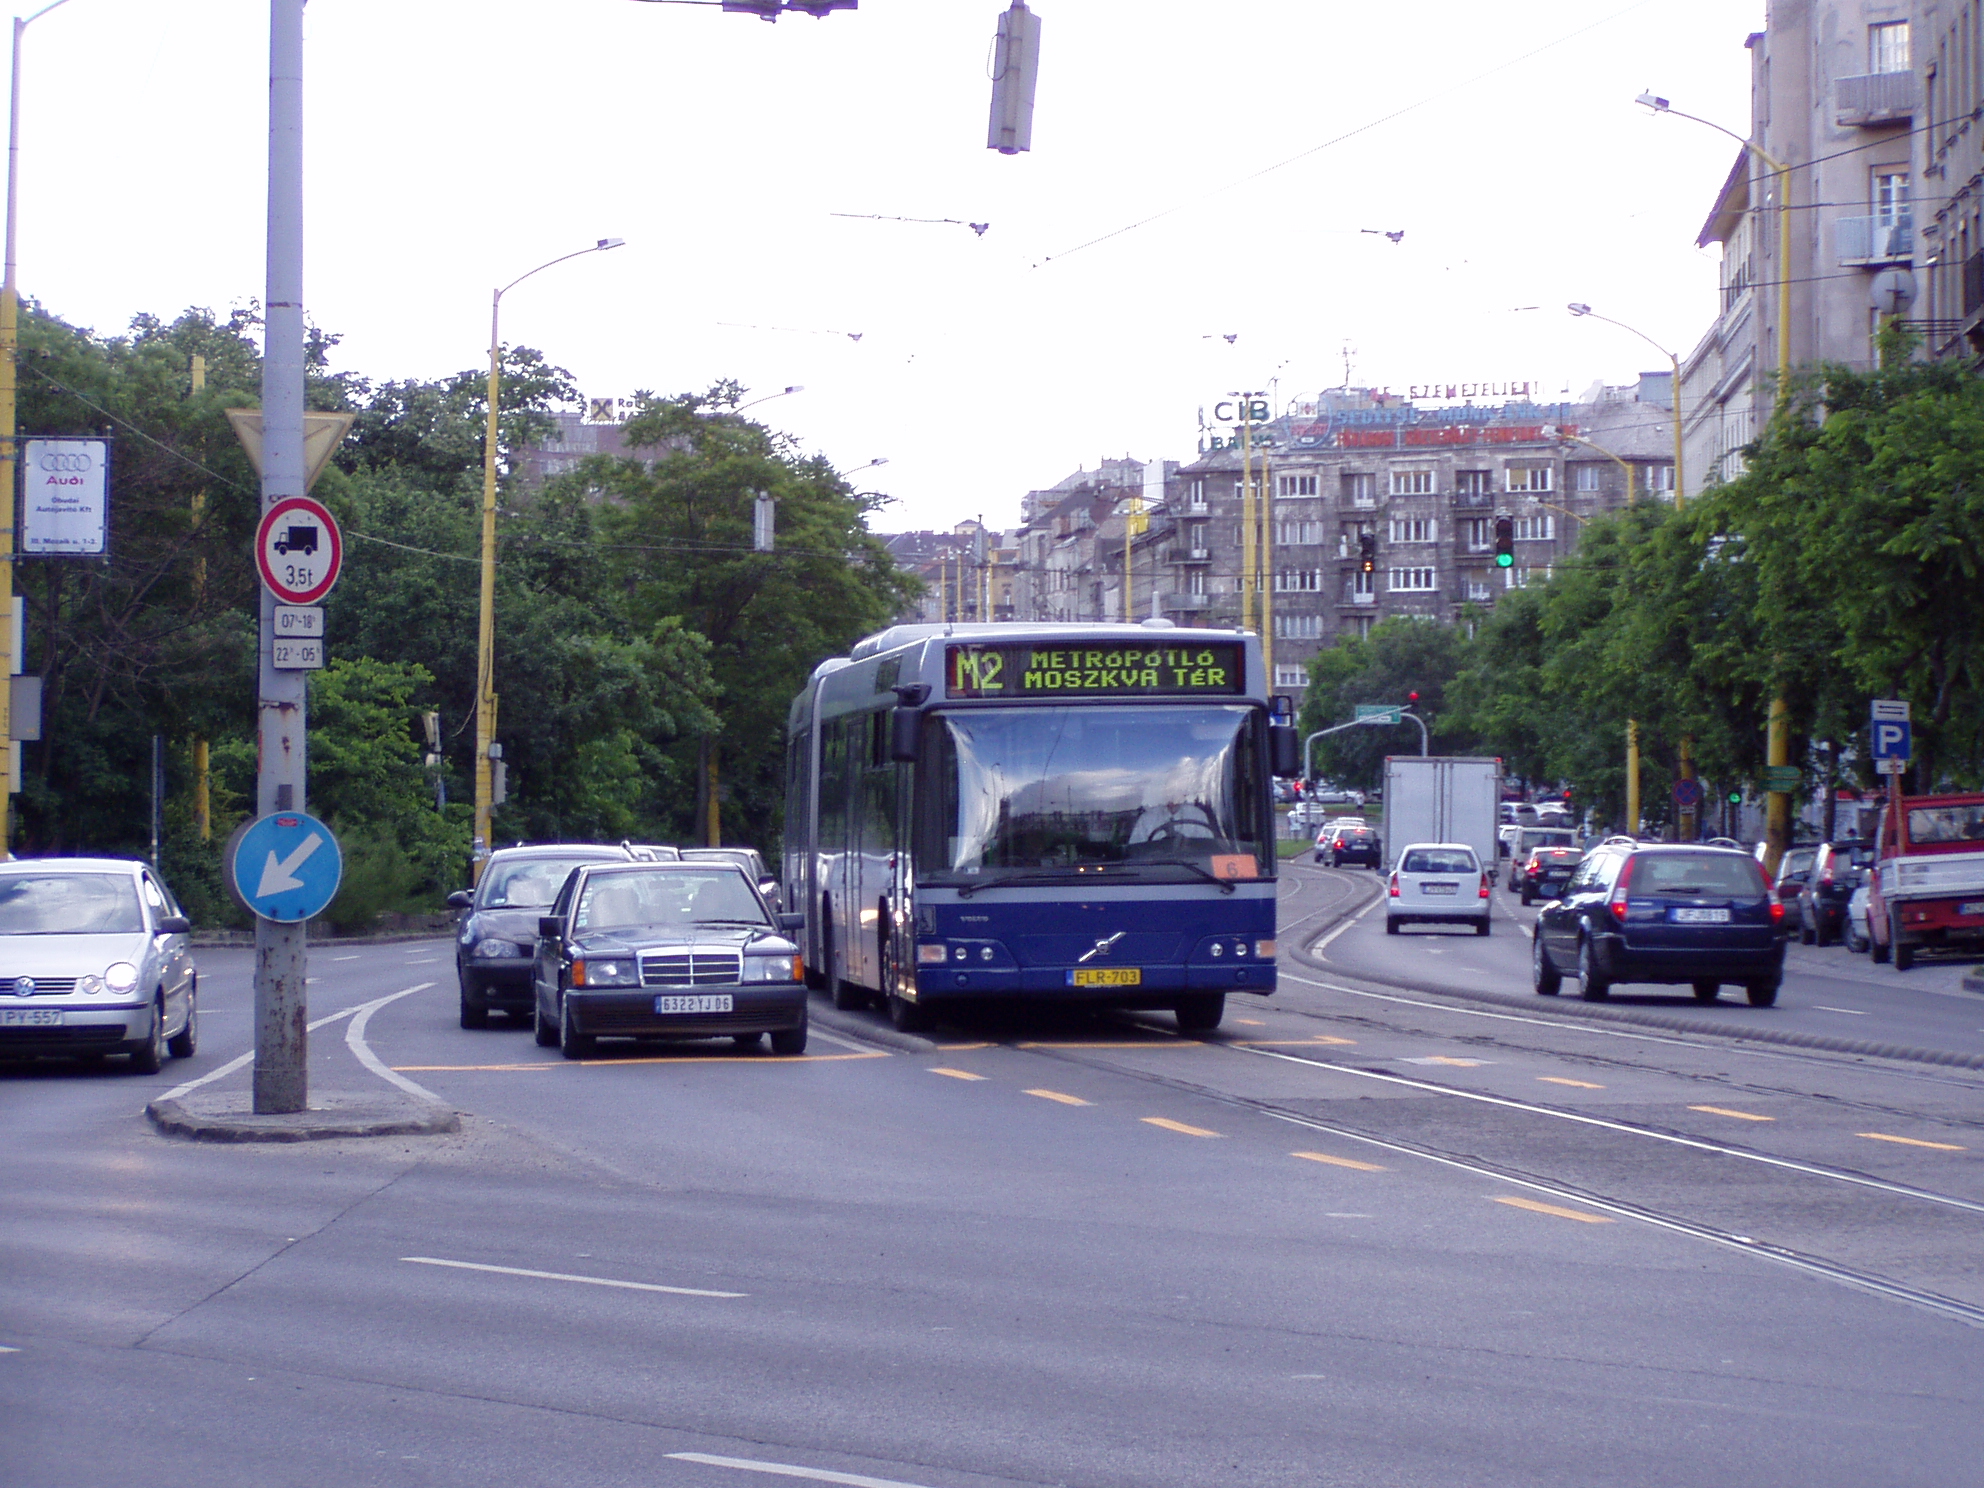 2006-ban is jártak már buszok a villamossíneken a Déli pályaudvar és az akkor még érvényes régi nevén a Moszkva tér között <br>(a szerző felvételei)